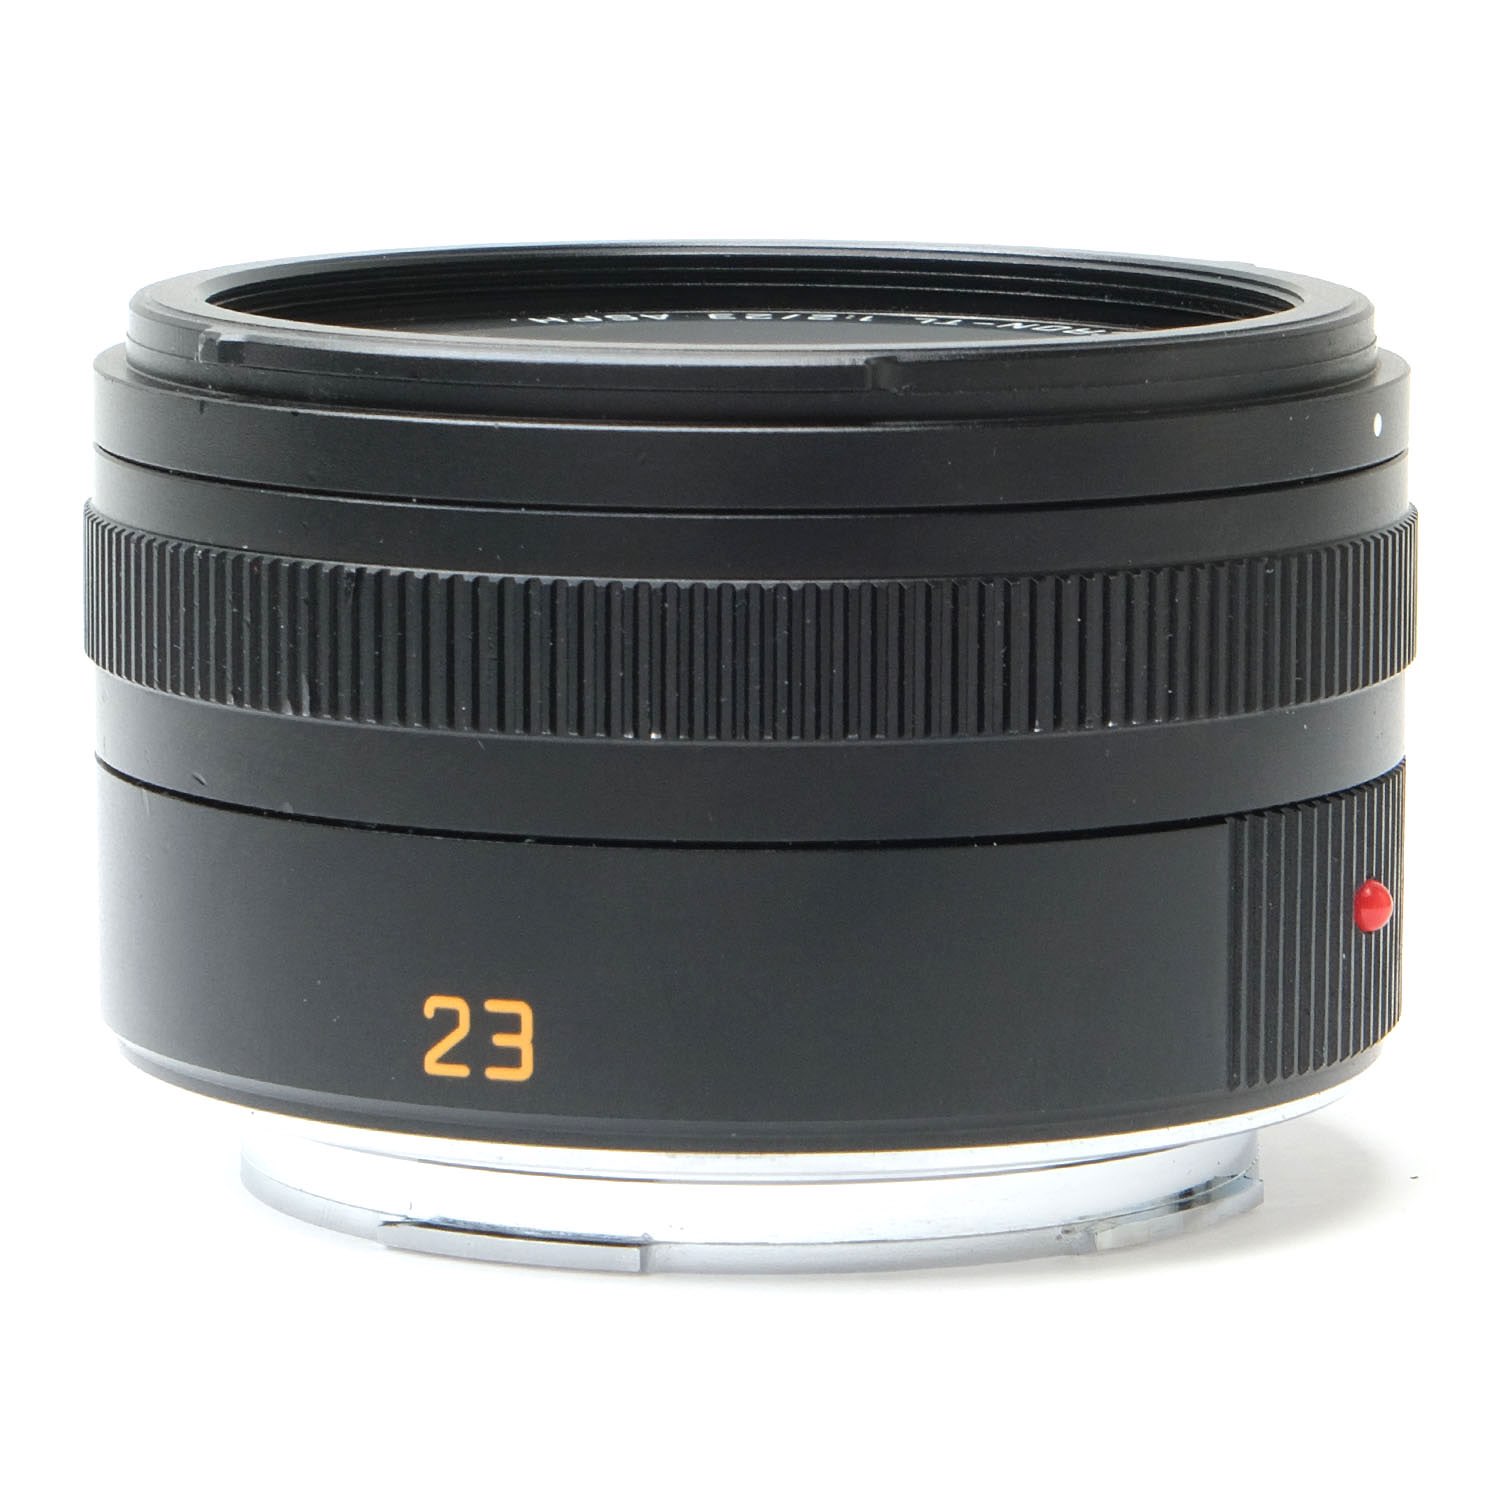 Leica 23mm f2 Summicron ASPH TL 4272302